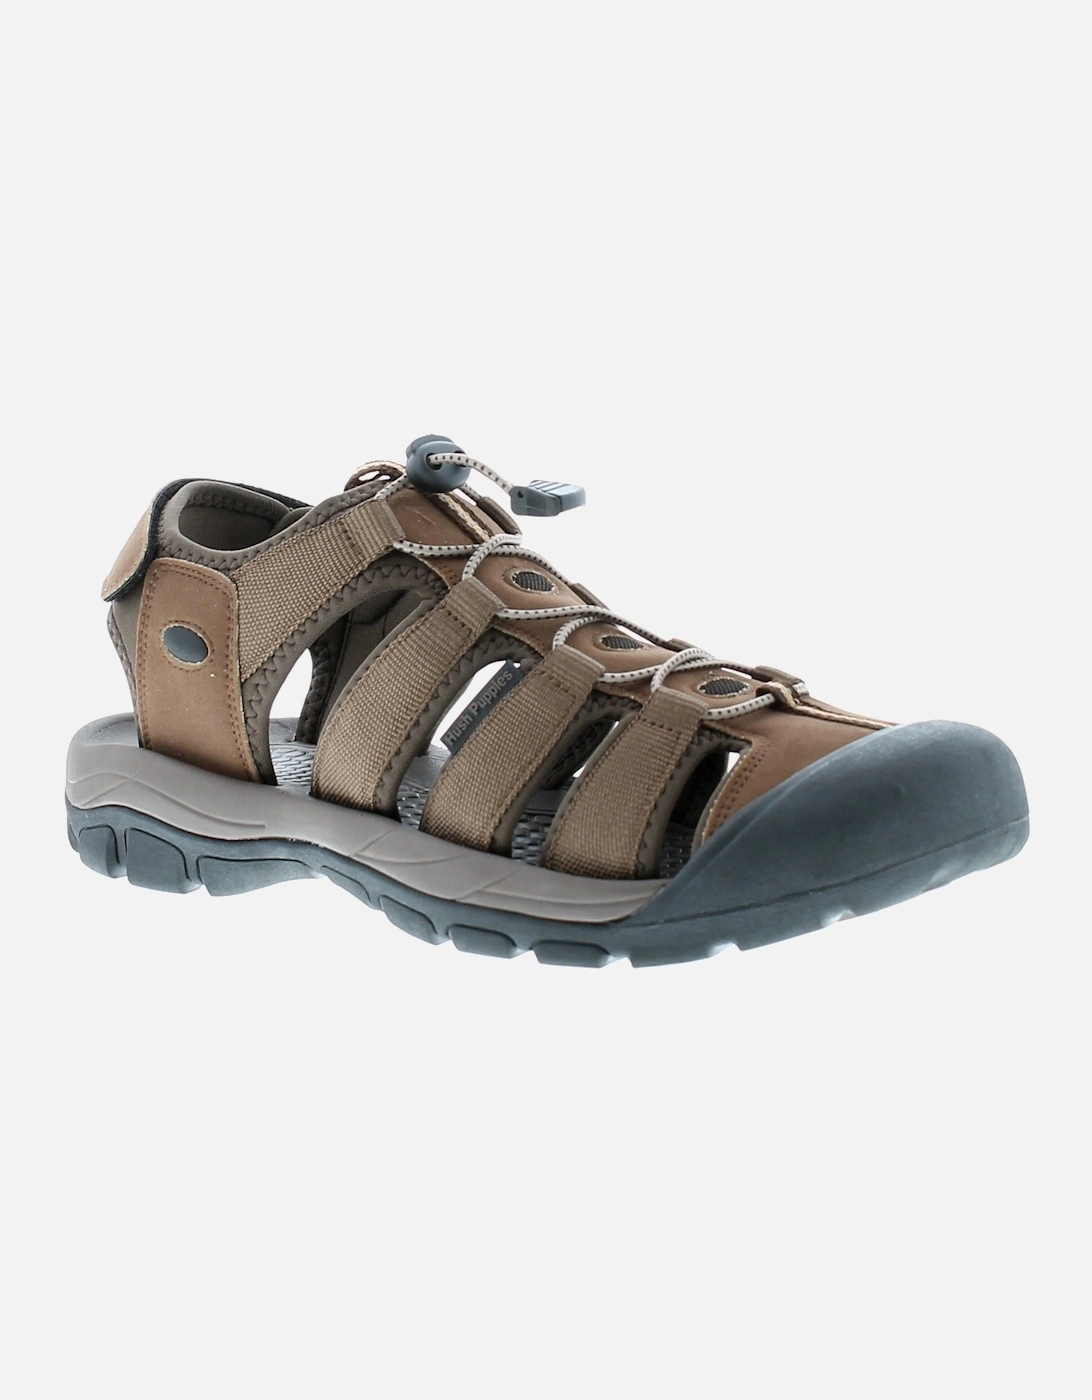 Mens Walking Sandals Peru Strap brown UK Size, 6 of 5